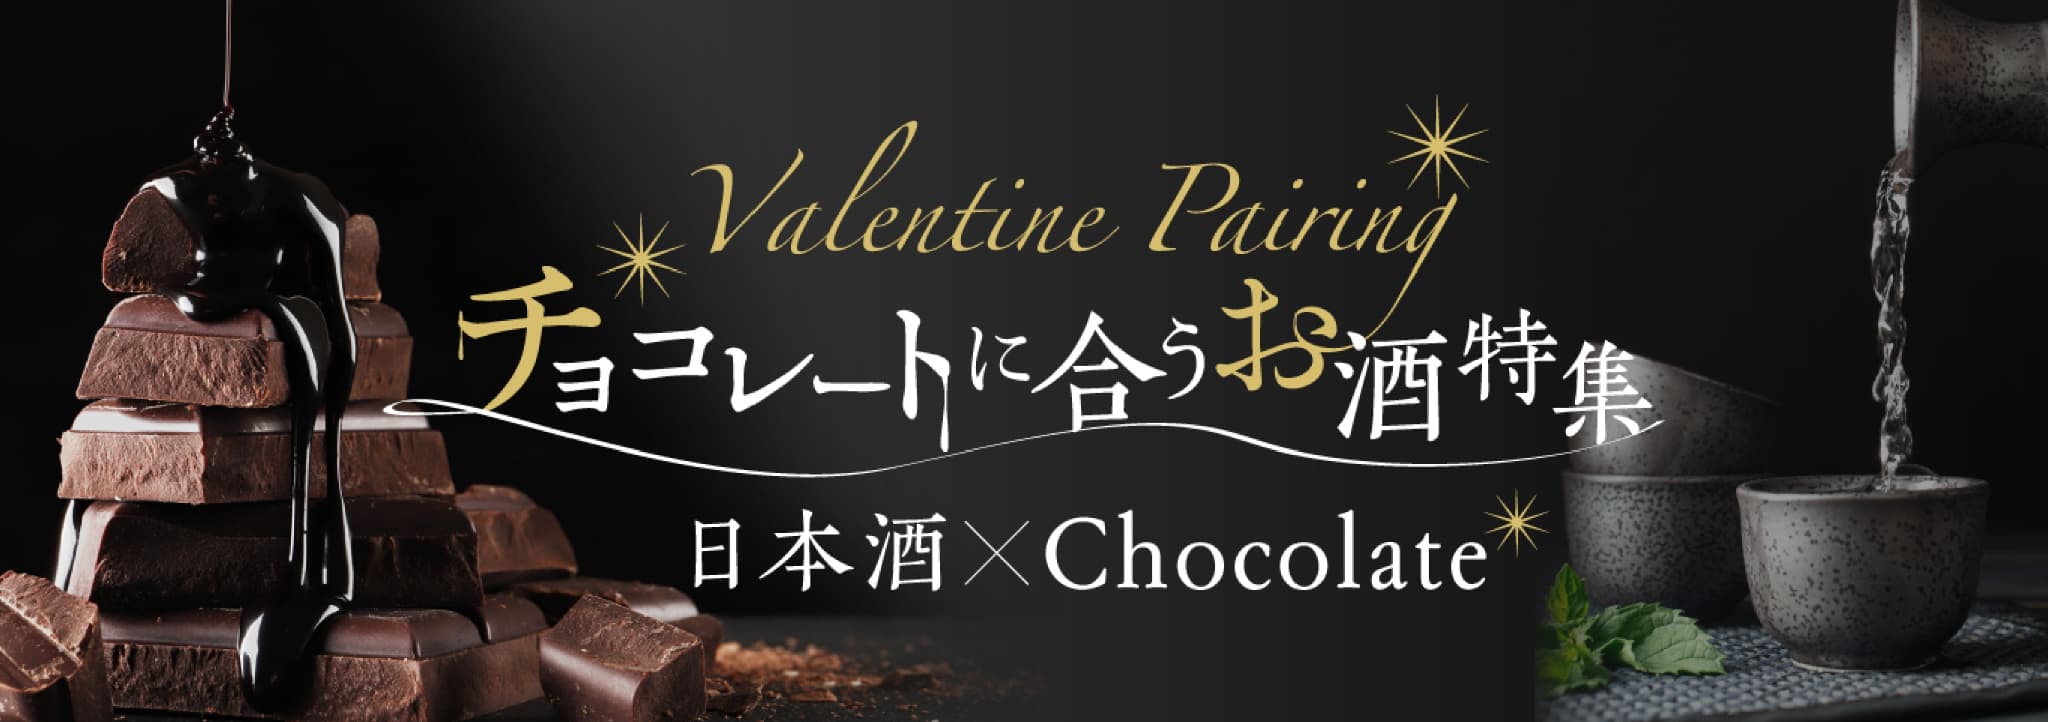 チョコレートに合うお酒特集 日本酒×Chocolate Valentine Pairing